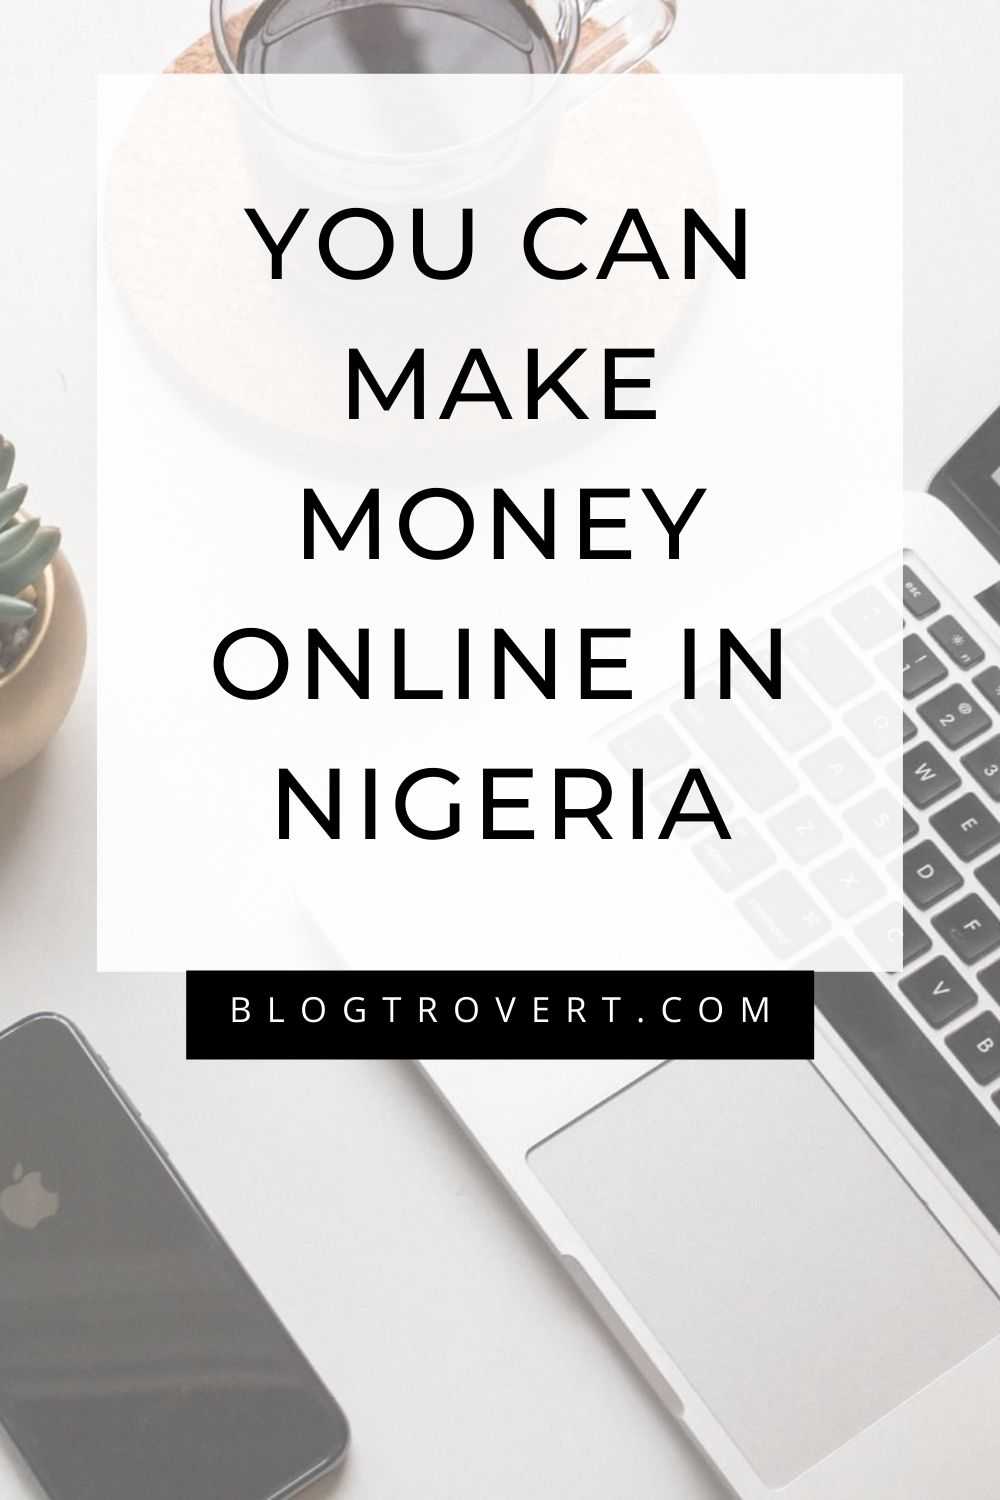 10 Reals ways to make money Online in Nigeria - 2022 1